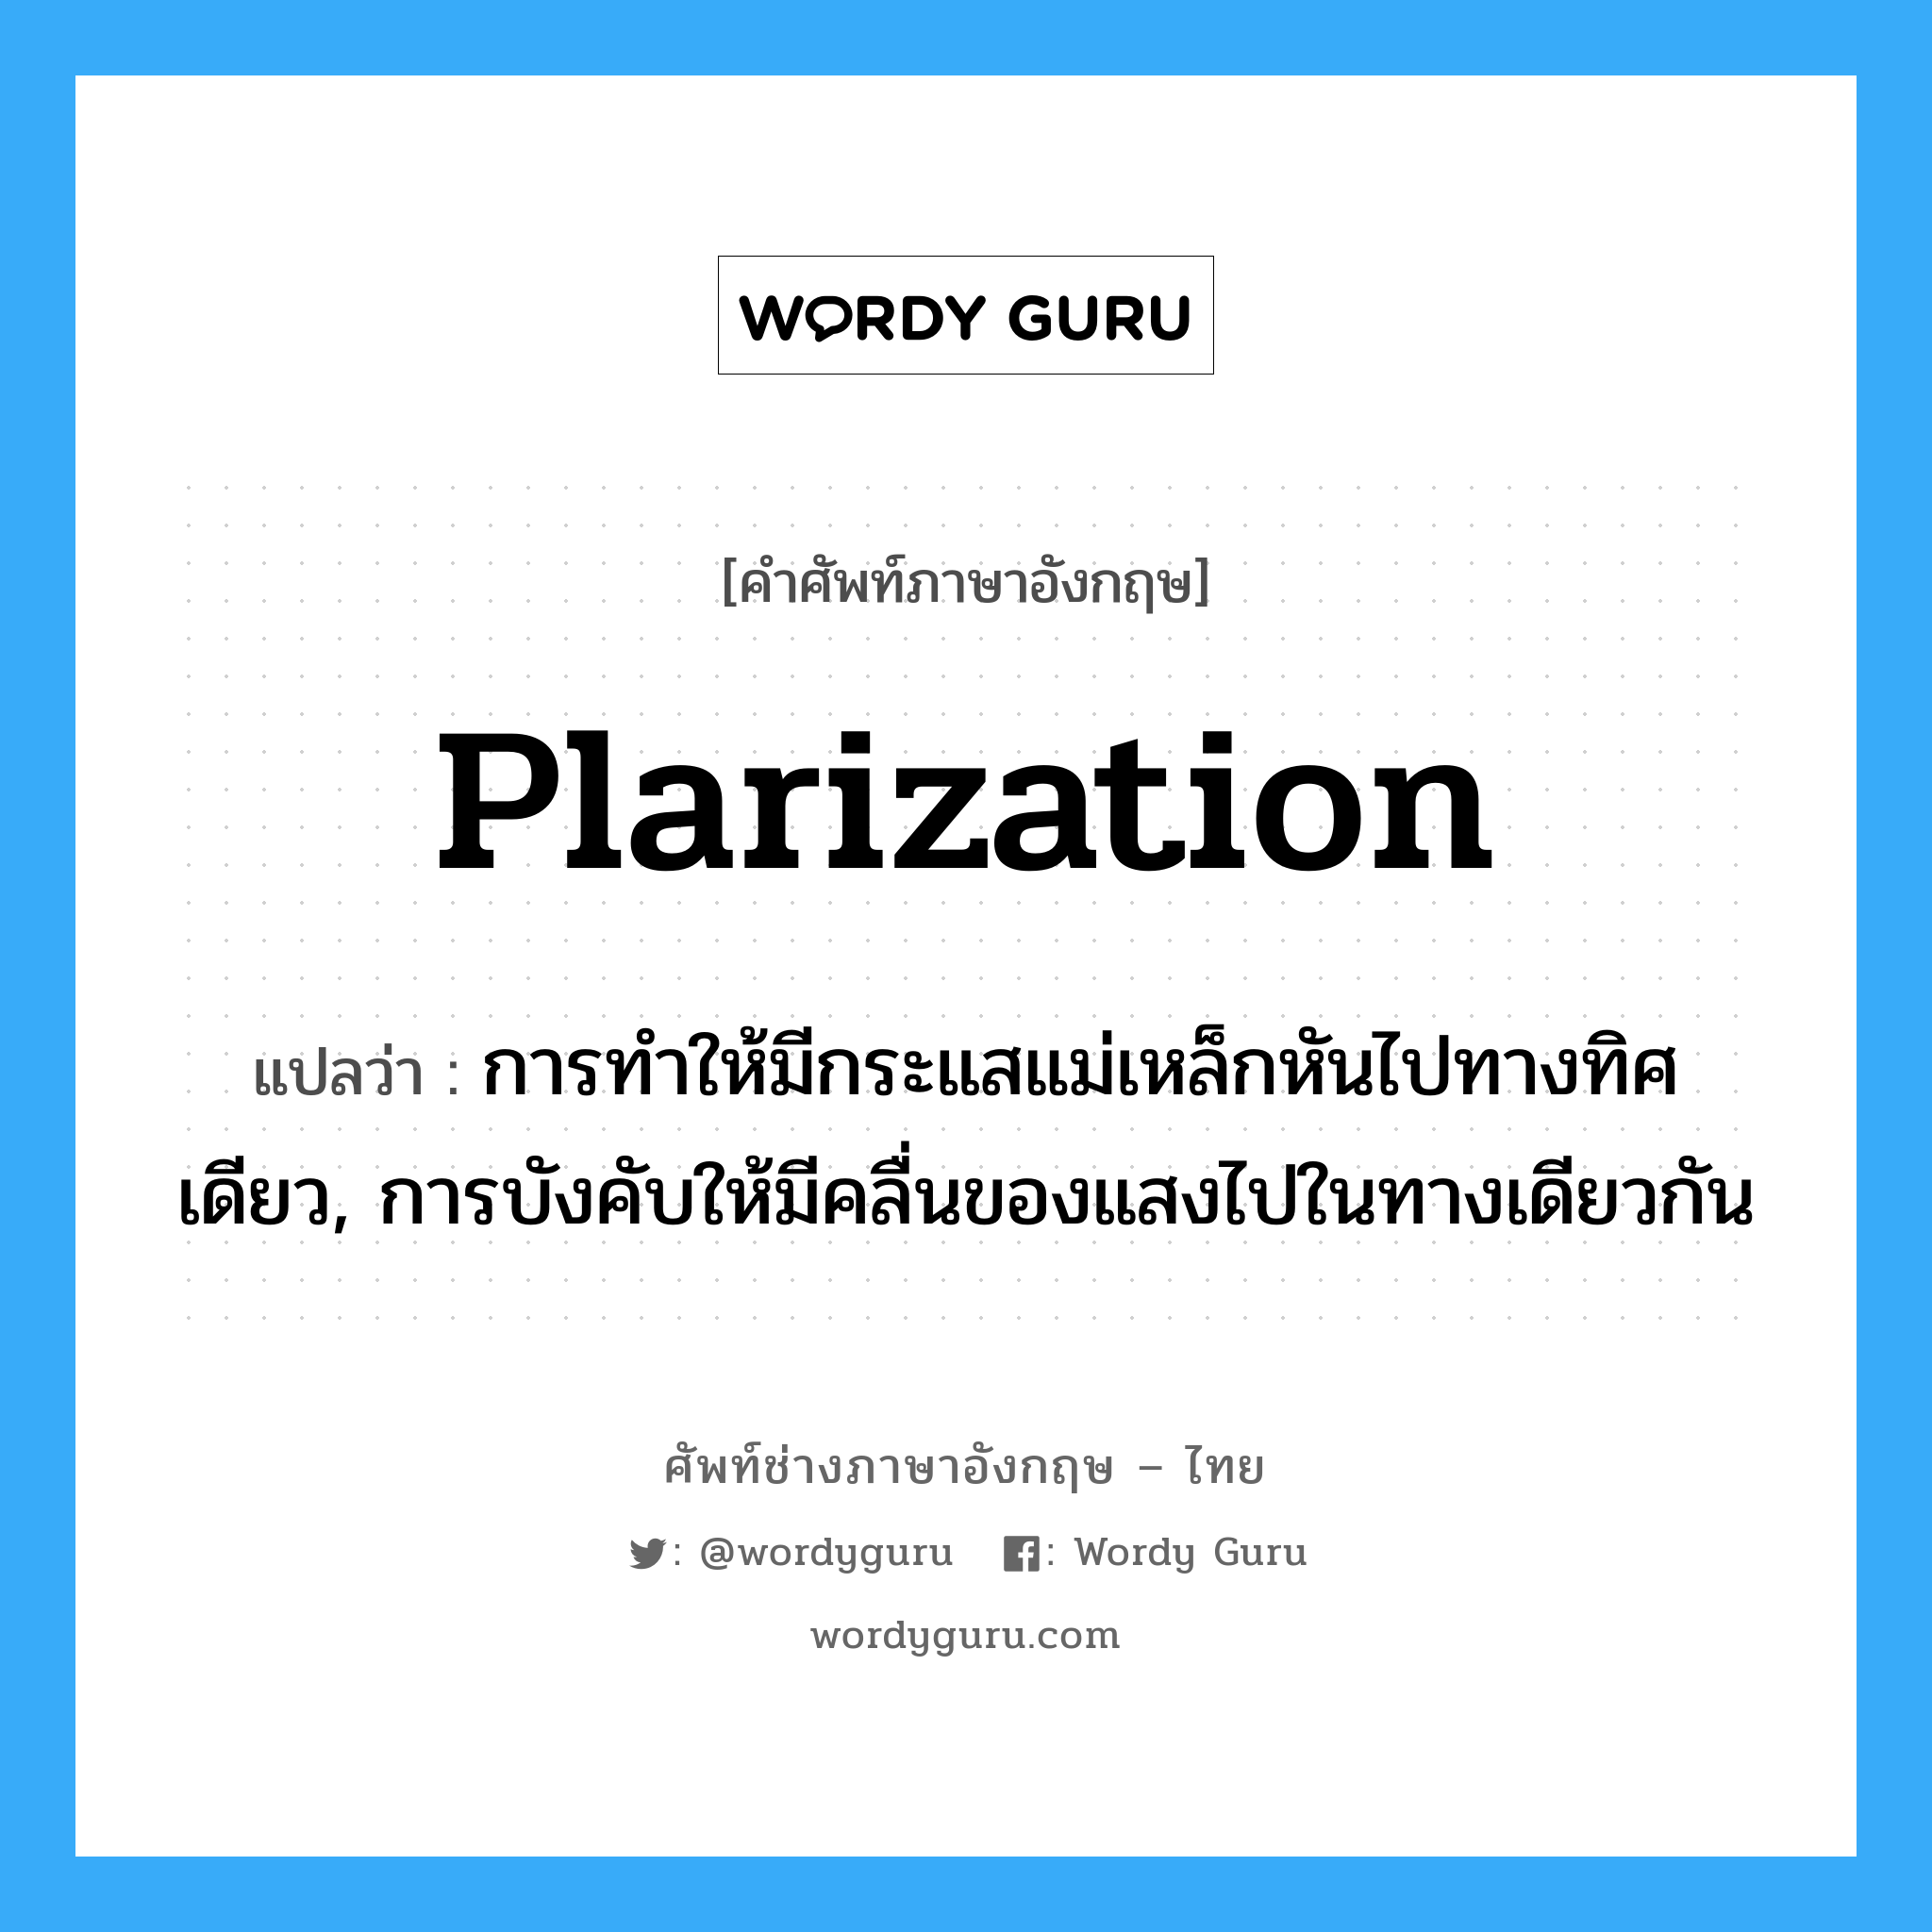 plarization แปลว่า?, คำศัพท์ช่างภาษาอังกฤษ - ไทย plarization คำศัพท์ภาษาอังกฤษ plarization แปลว่า การทำให้มีกระแสแม่เหล็กหันไปทางทิศเดียว, การบังคับให้มีคลื่นของแสงไปในทางเดียวกัน